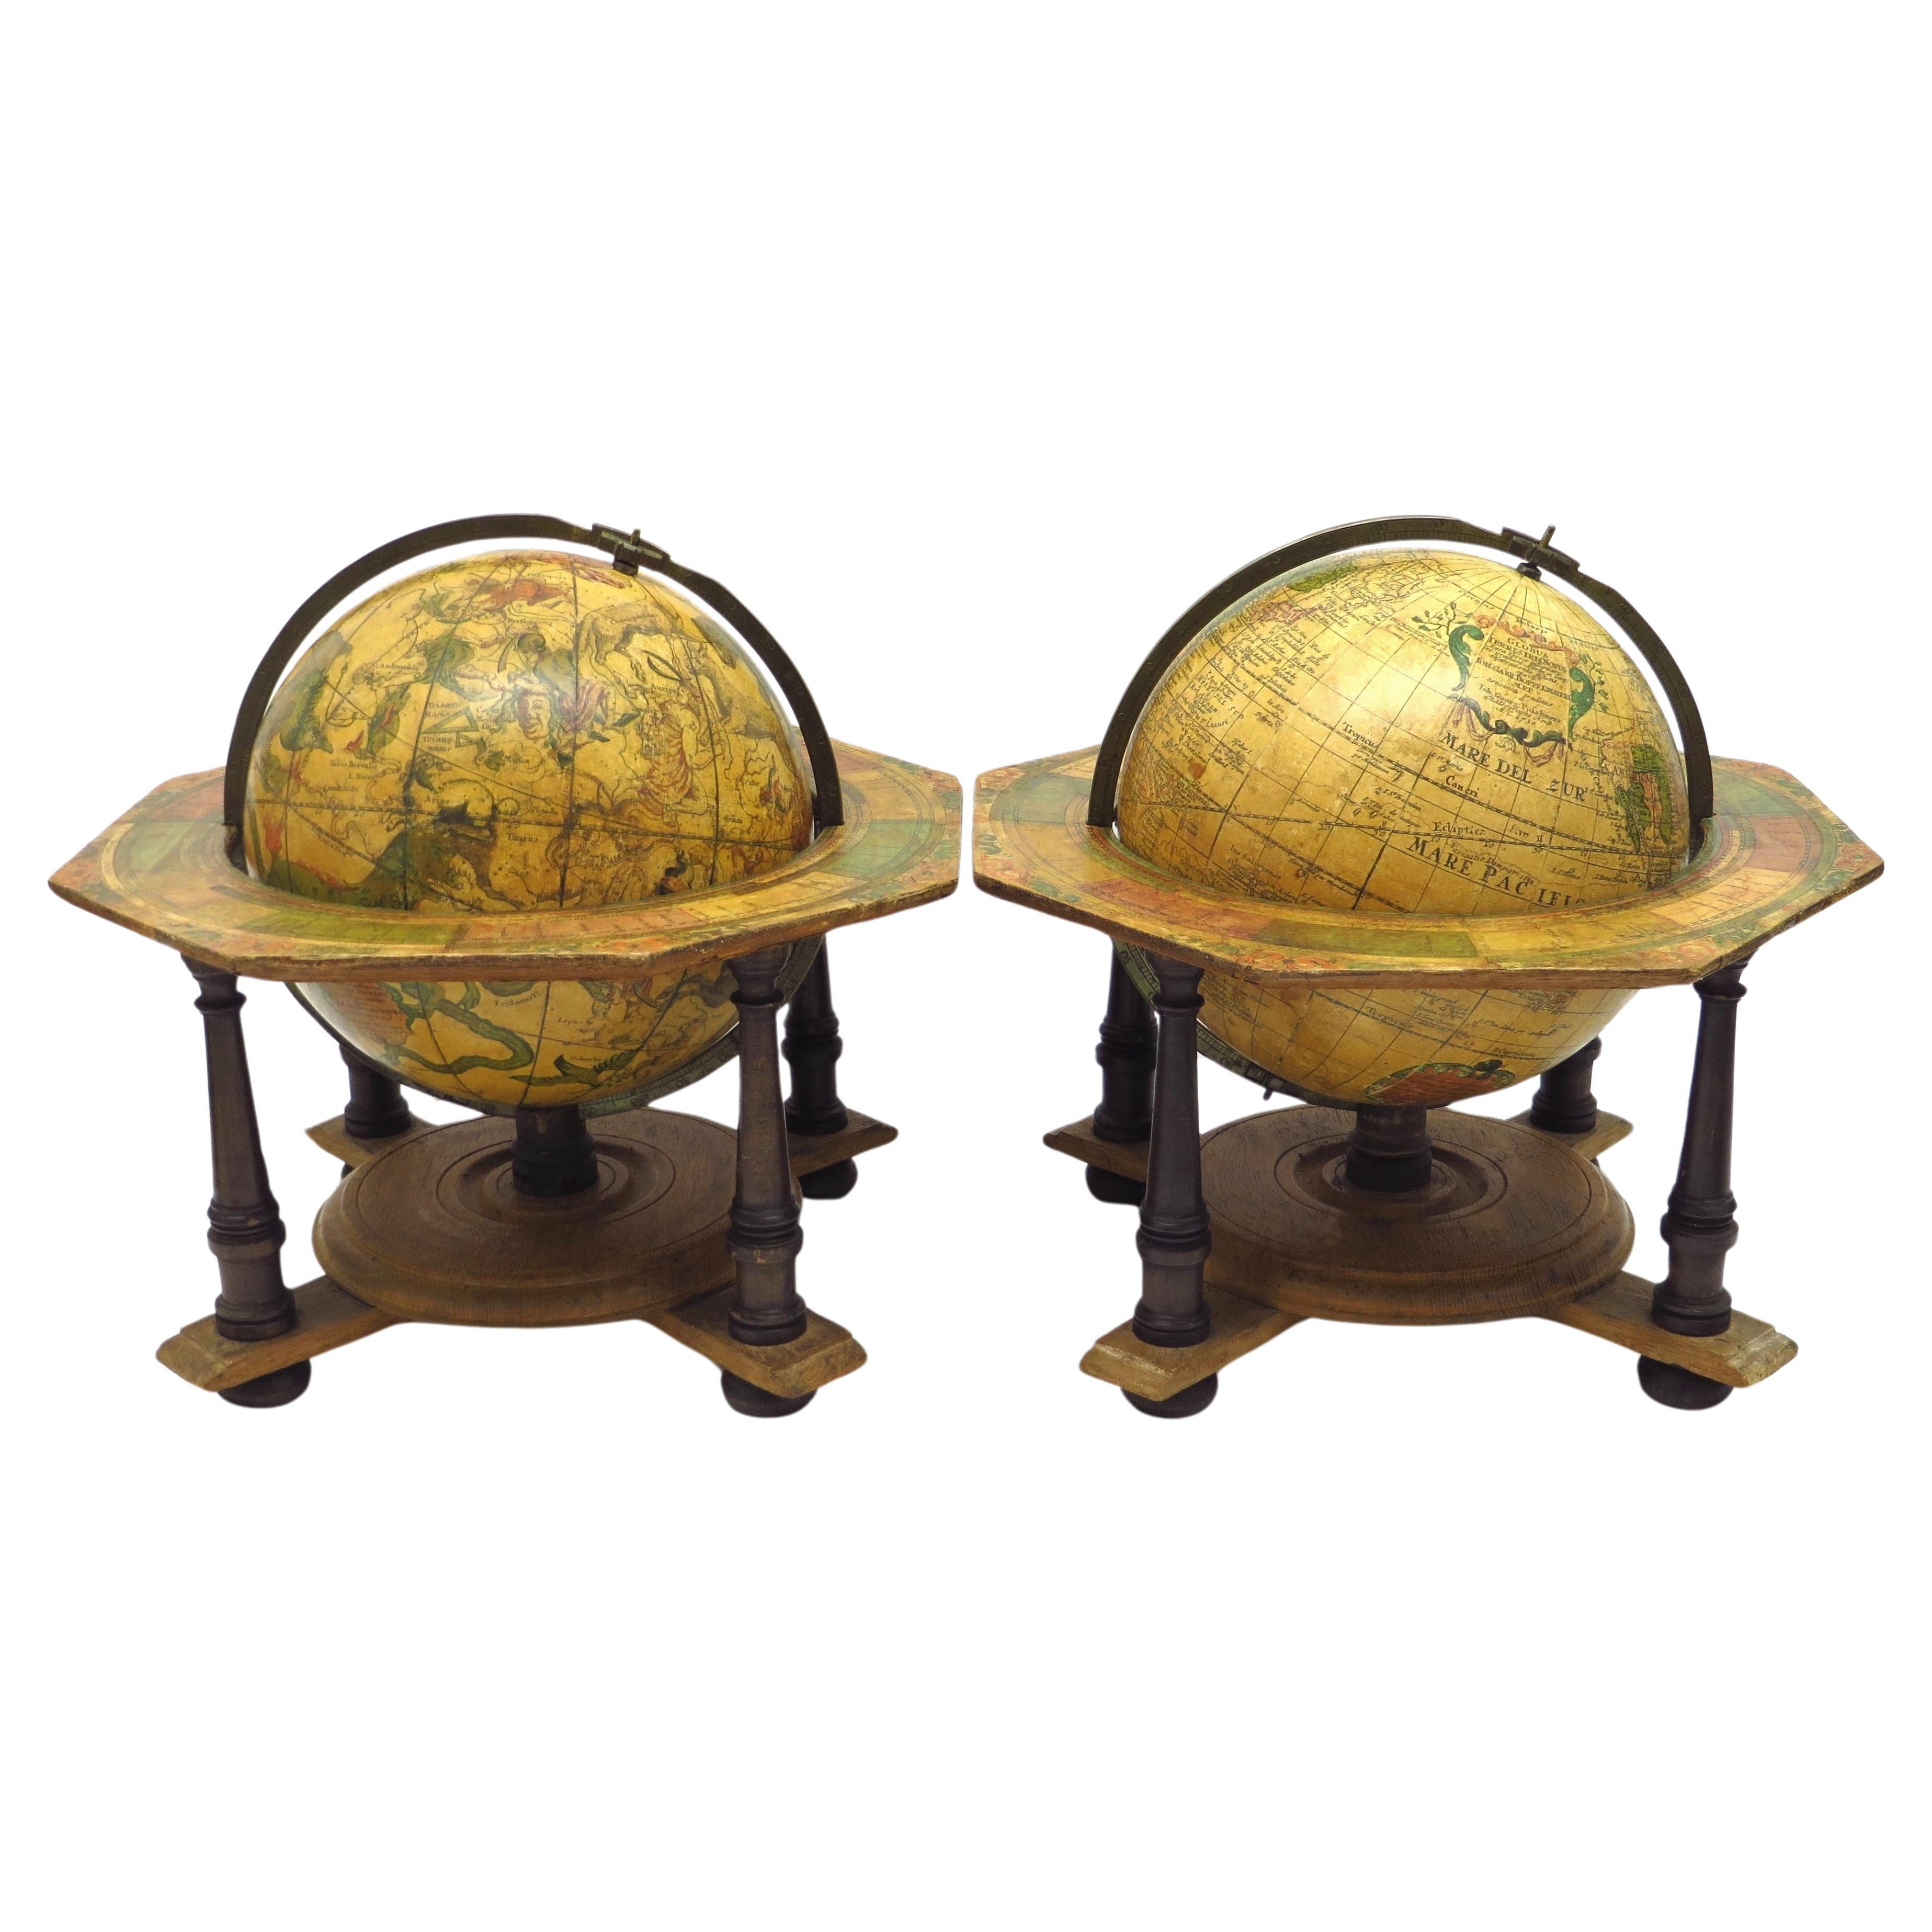 Une paire de globes de table décoratifs rares en bon état.